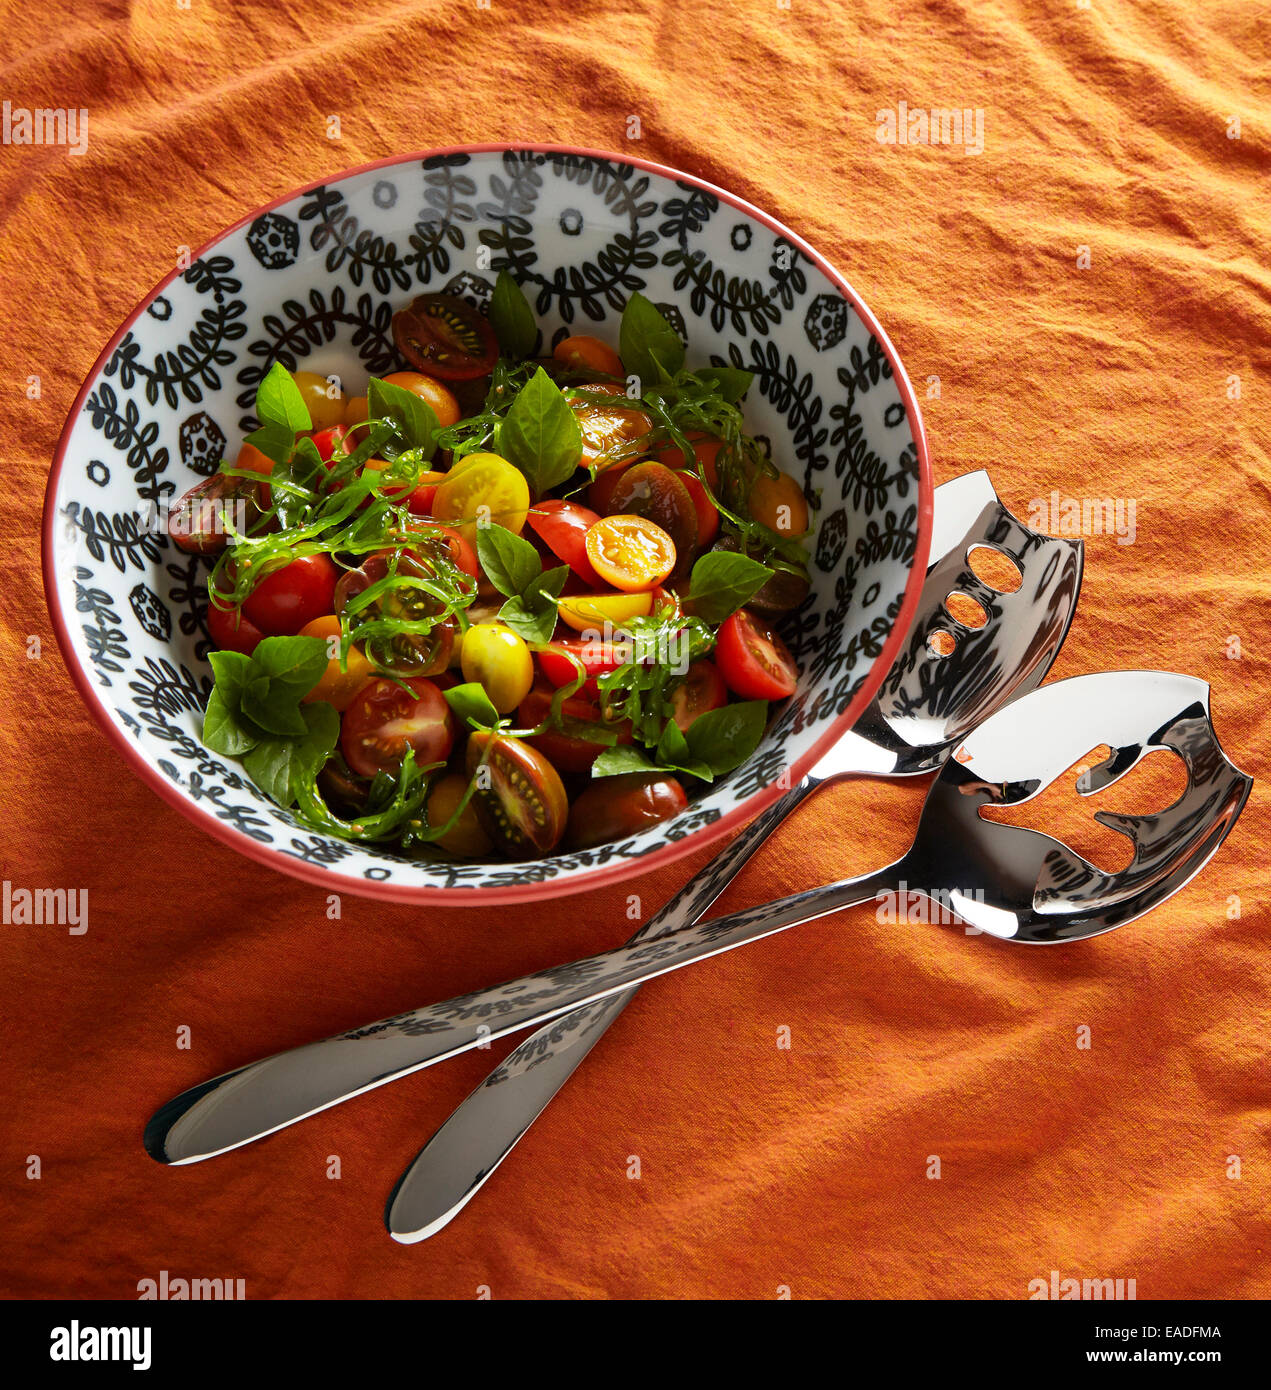 Mescolato al pomodoro, basilico e insalata di alghe marine su un arancio tovaglia cibo in un bianco e nero ciotola Foto Stock